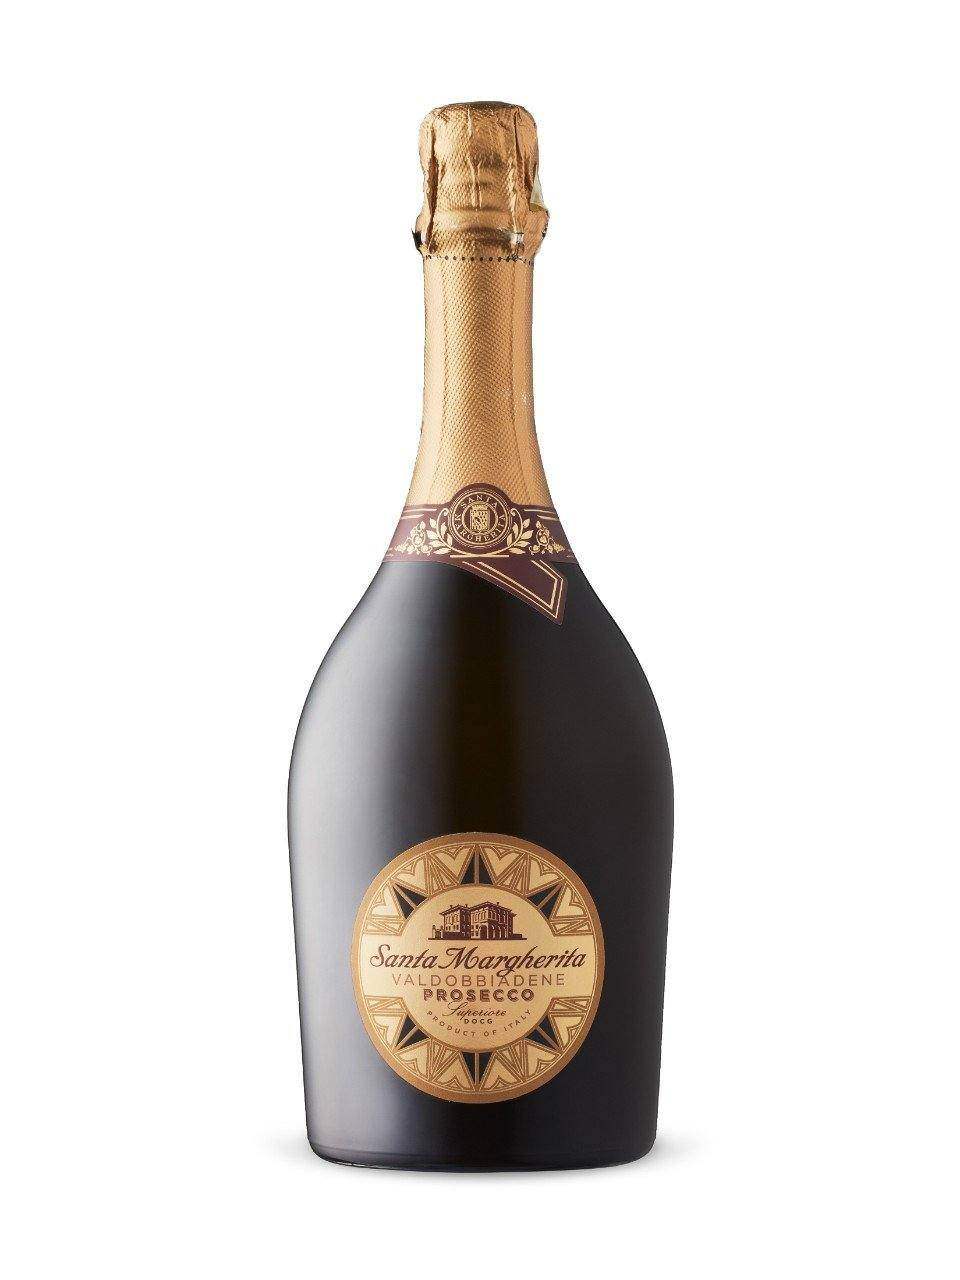 Santa Margherita Brut Valdobbiadene Prosecco Superiore | Exquisite Wine & Alcohol Gift Delivery Toronto Canada | Vyno